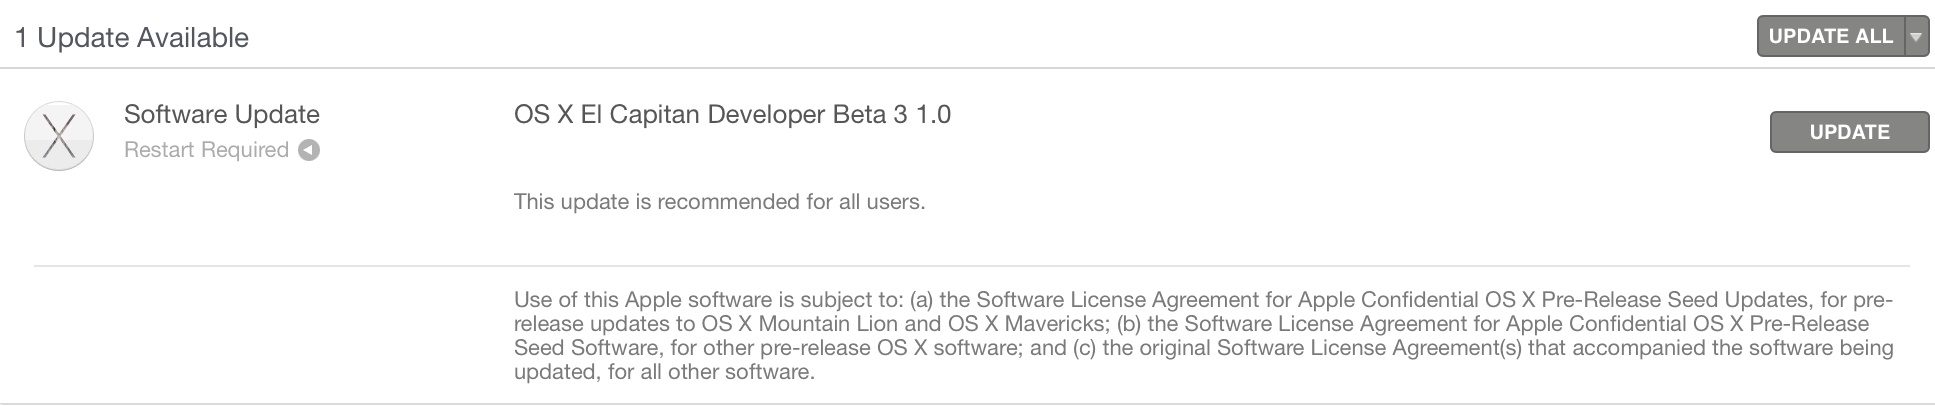 OS X El Capitan developer beta 3 1.0 download